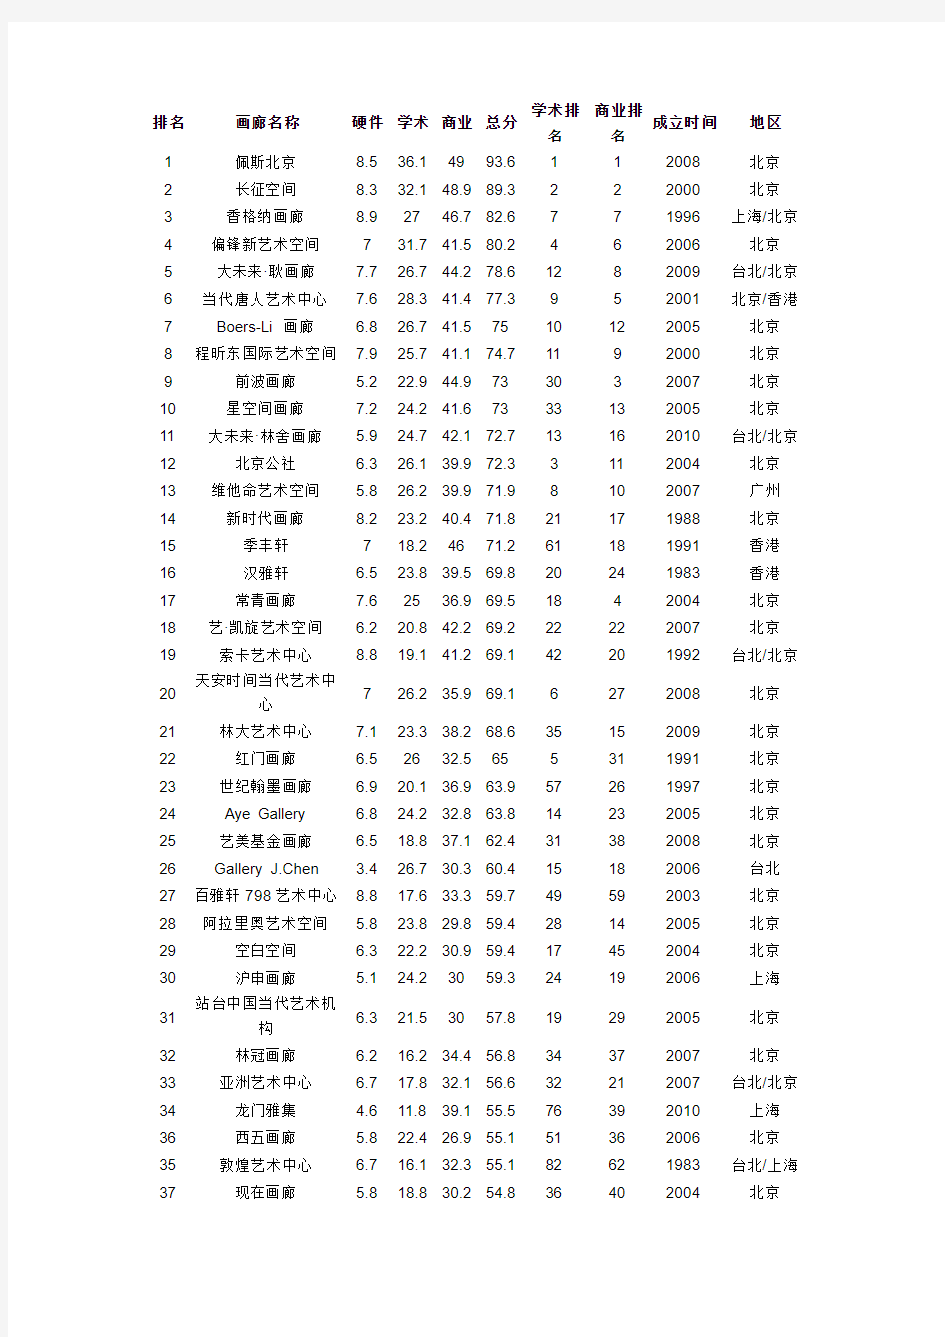 2010至2011年度中国画廊排行榜